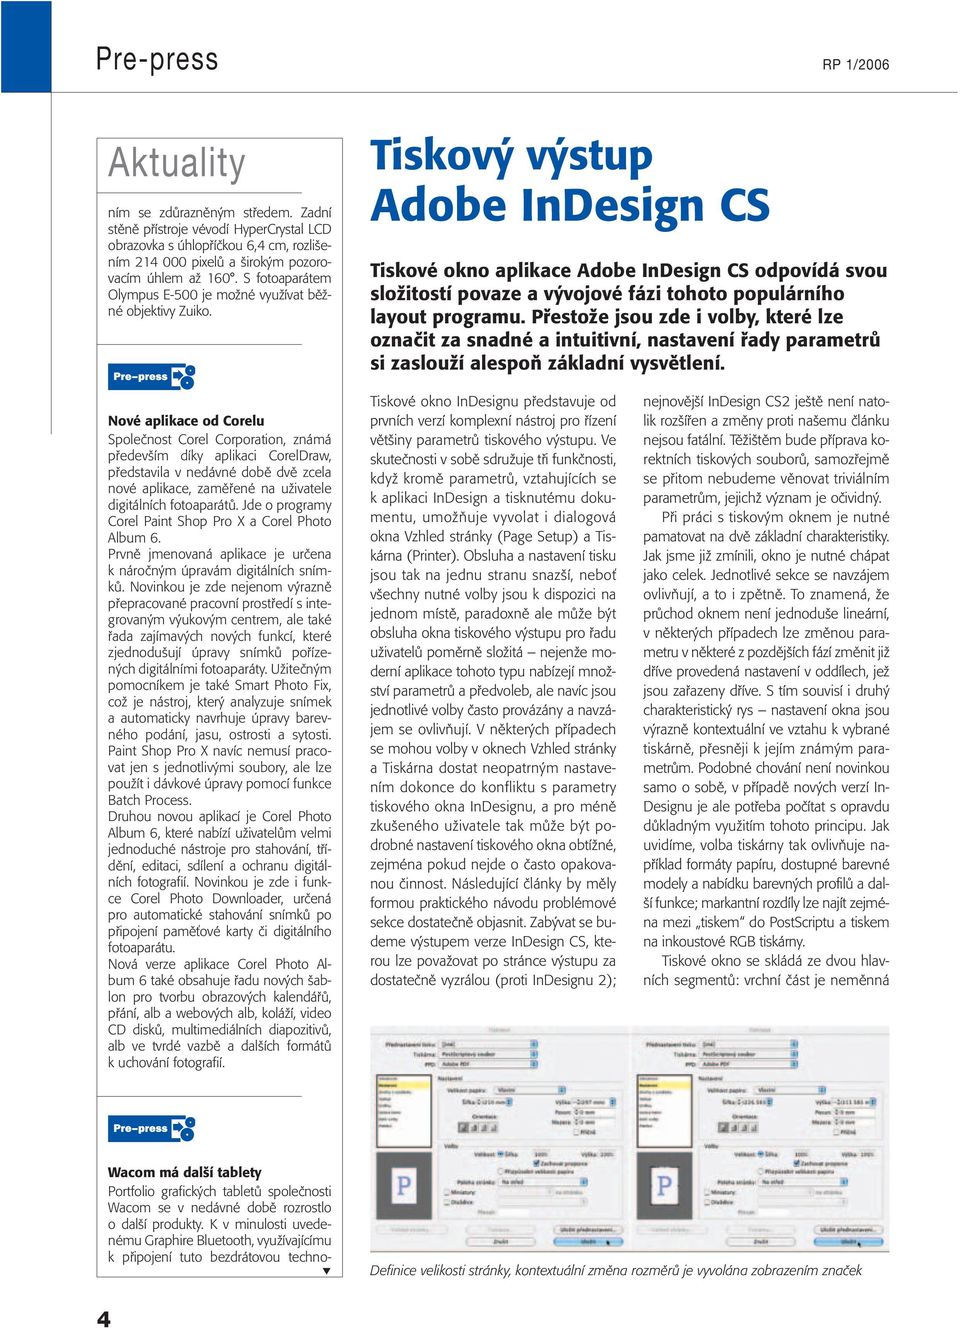 Tiskový výstup Adobe InDesign CS Tiskové okno aplikace Adobe InDesign CS odpovídá svou složitostí povaze a vývojové fázi tohoto populárního layout programu.